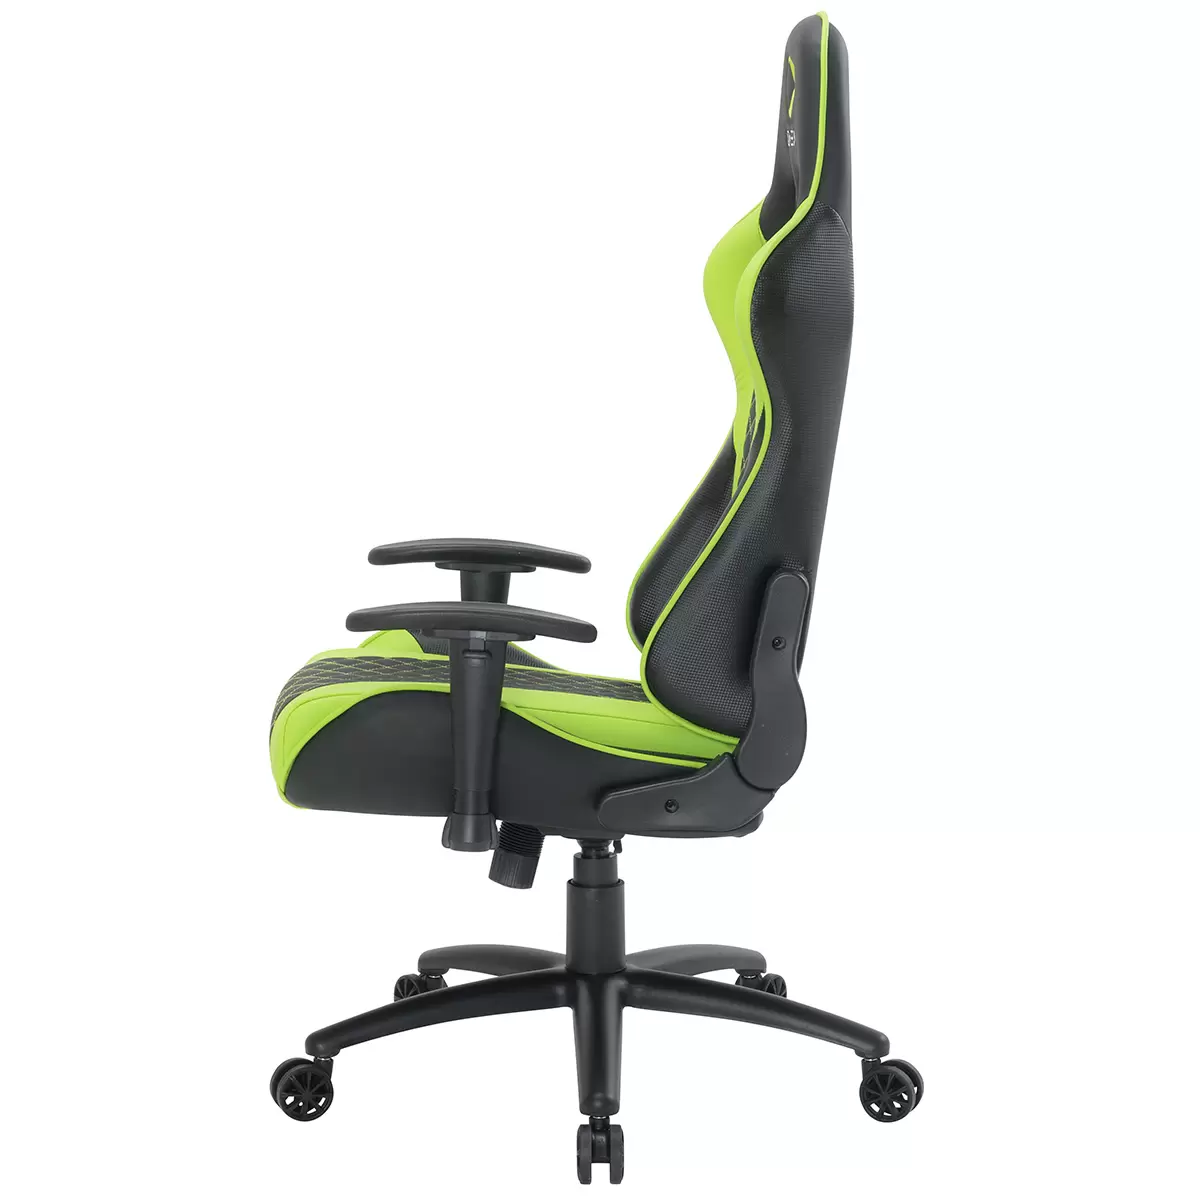 ONEX Gaming Chair GX3 Black Green